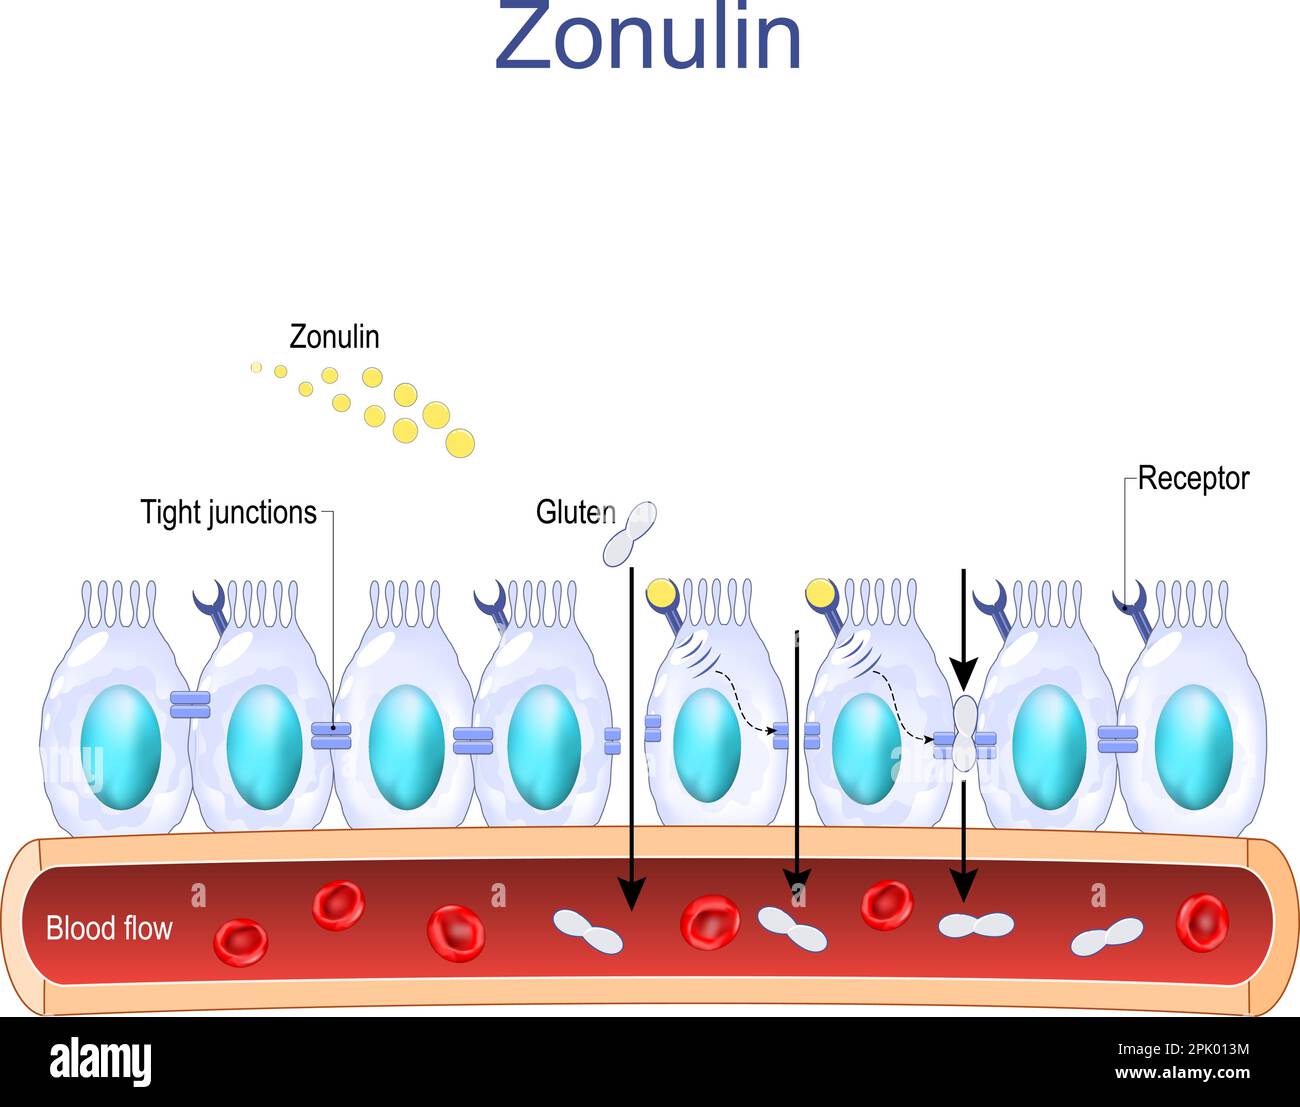 La zonuline est une protéine qui augmente la perméabilité des jonctions serrées entre les cellules de la paroi du tractus gastro-intestinal. système digestif Illustration de Vecteur